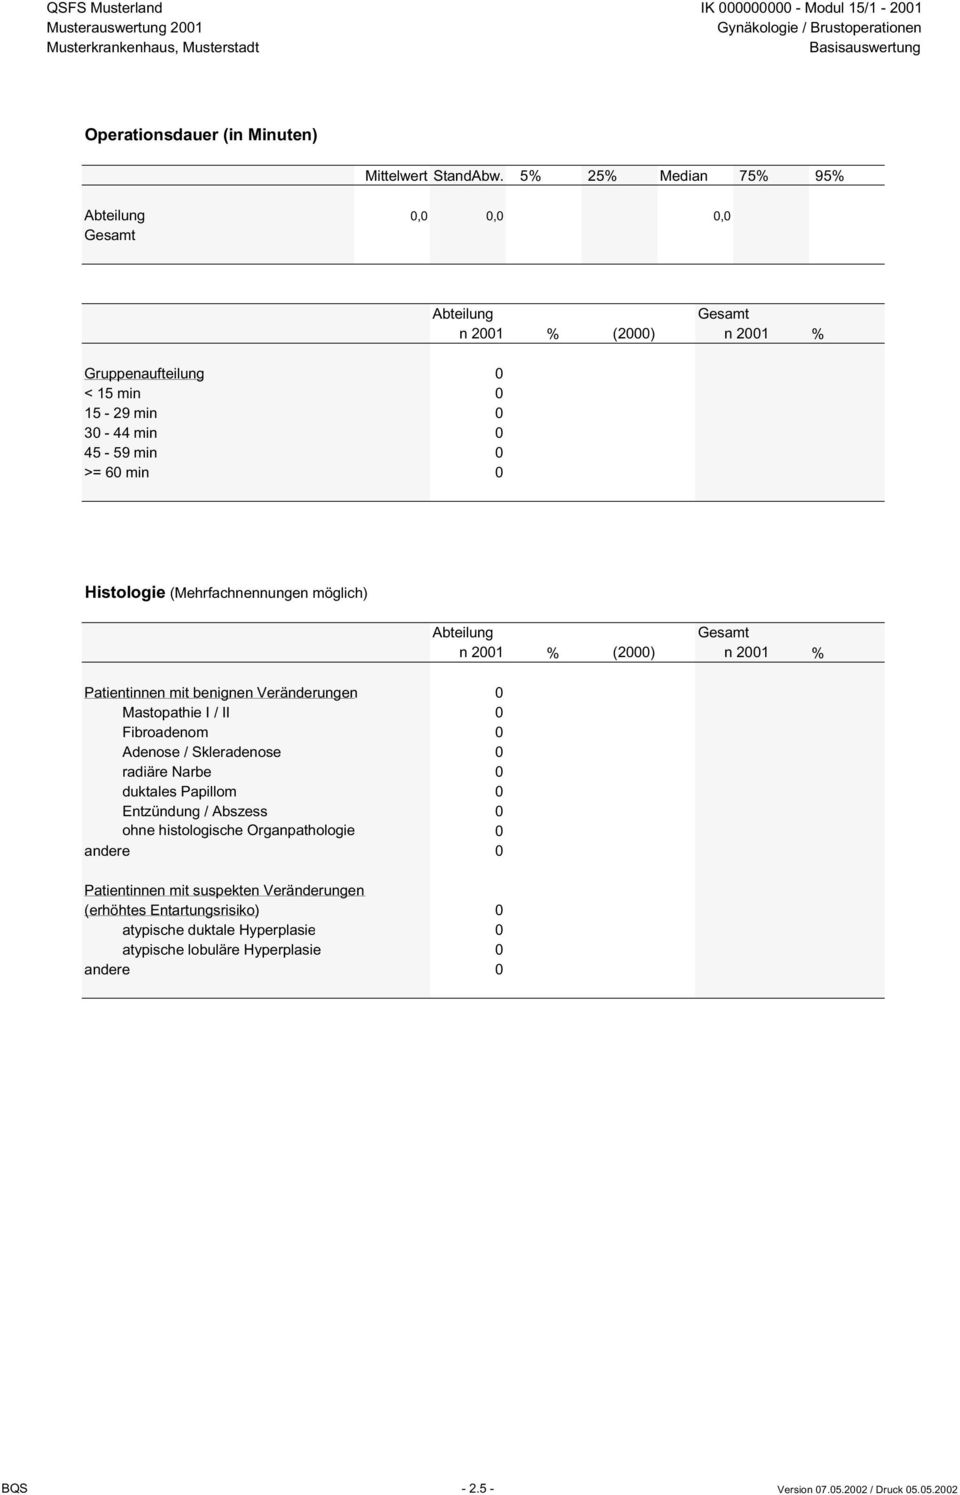 möglich) Patientinnen mit benignen Veränderungen 0 Mastopathie I / II 0 Fibroadenom 0 Adenose / Skleradenose 0 radiäre Narbe 0 duktales Papillom 0